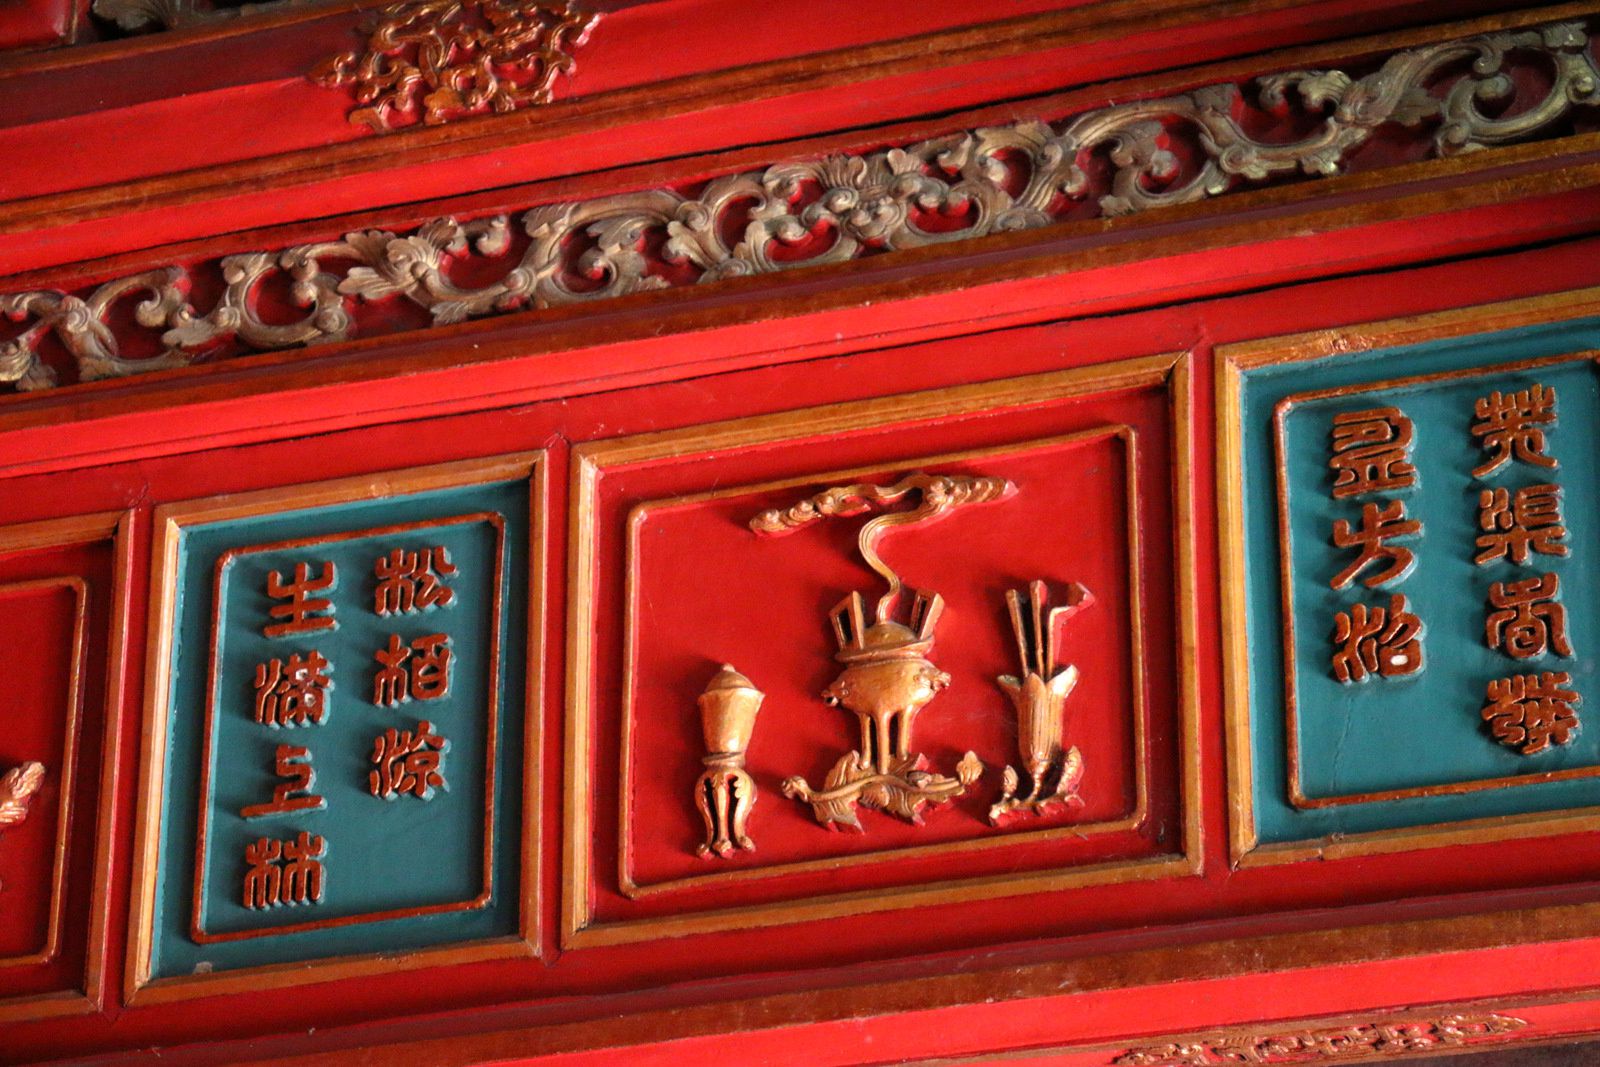  Le temple du Culte du roi, mausolée de l'empereur Minh Mạng